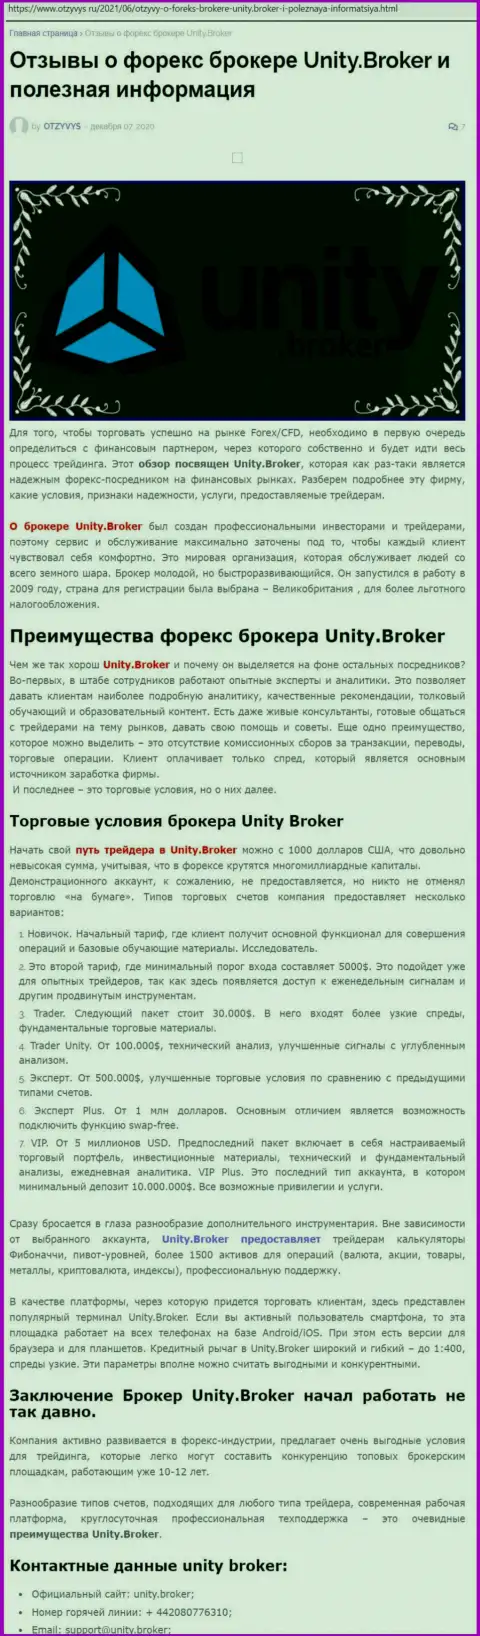 Публикация о ФОРЕКС-дилинговой организации Unity Broker на web-ресурсе отзивис ру